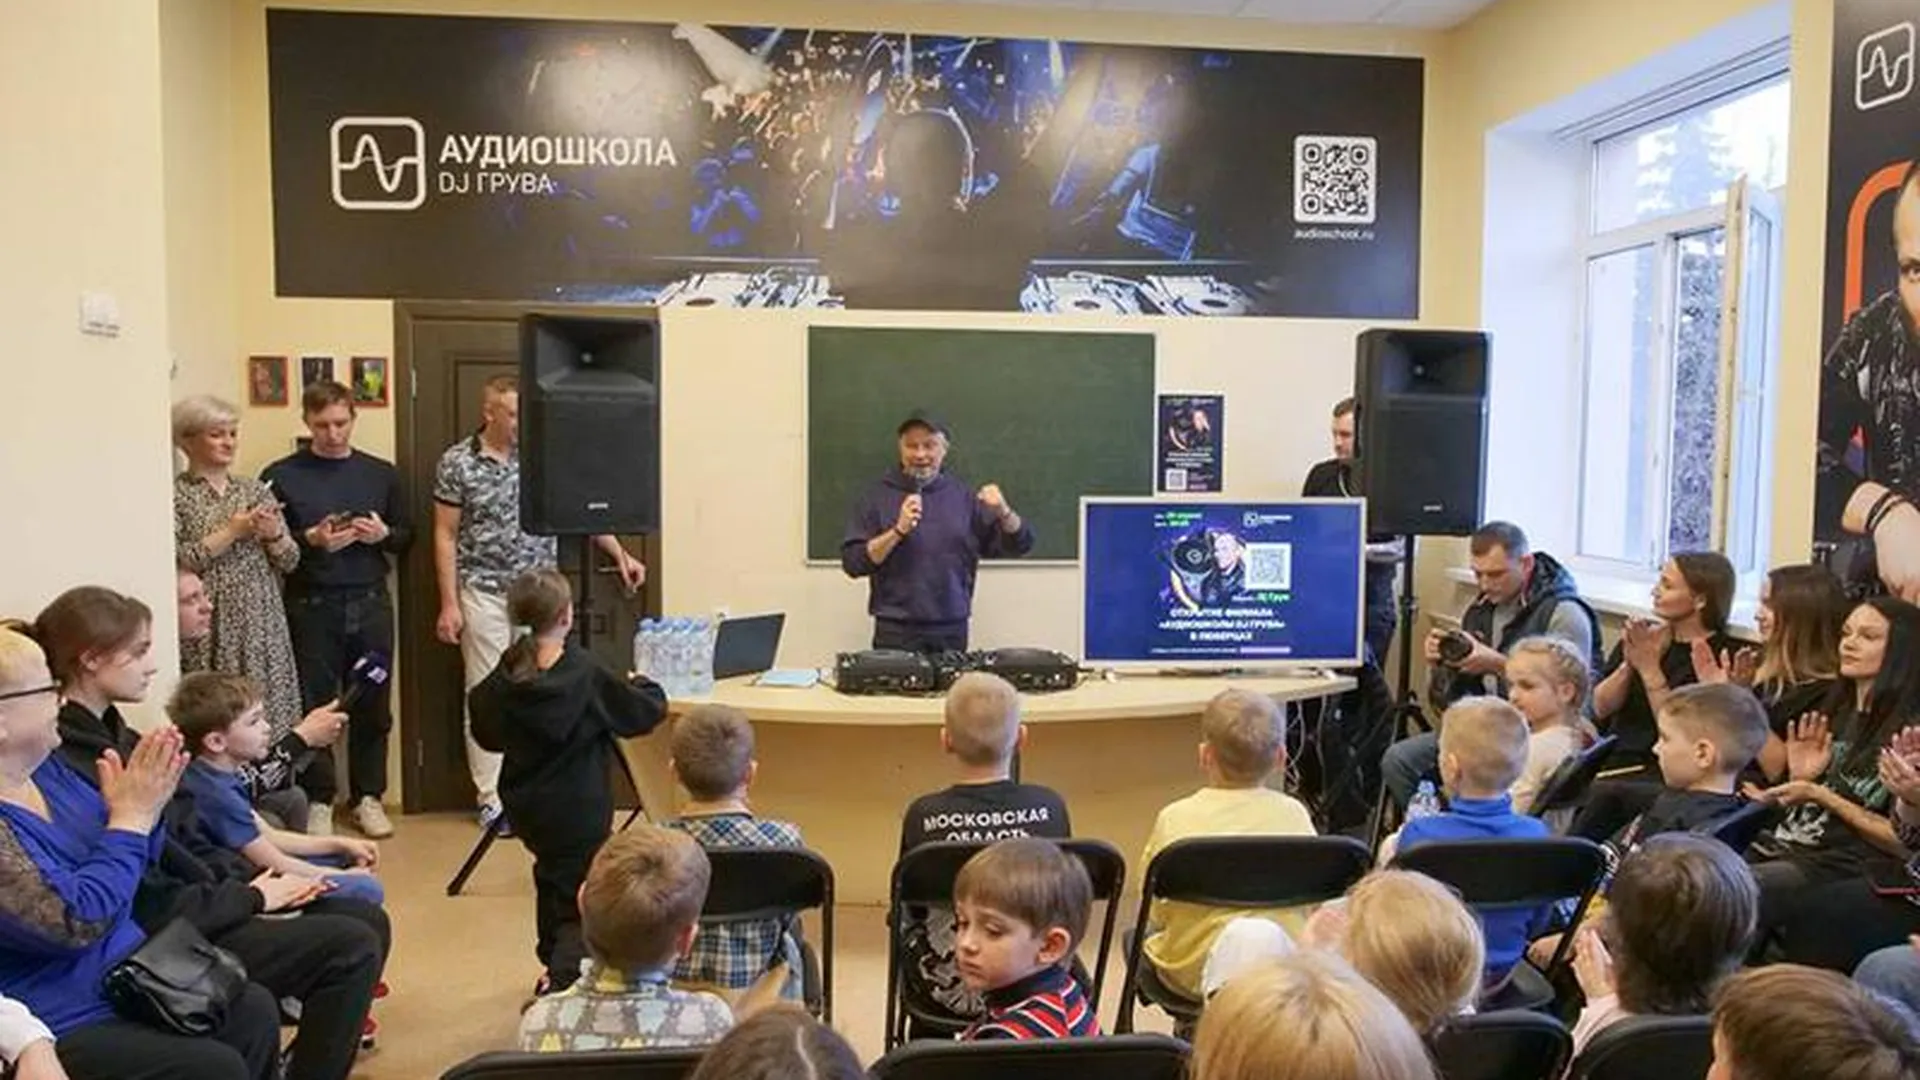 Филиал аудиошколы DJ Грува появился в городском округе Люберцы